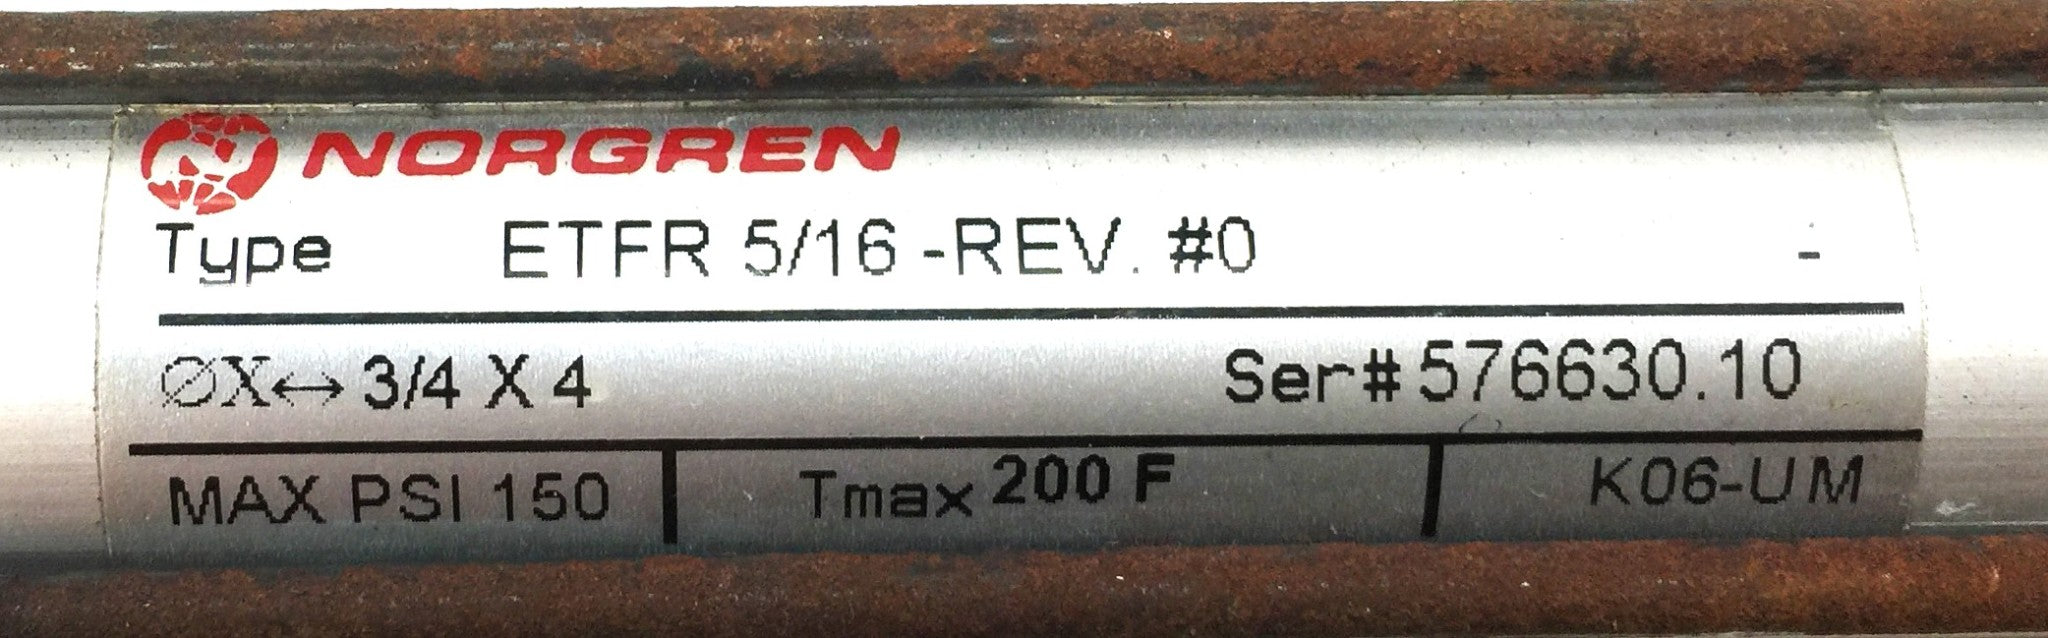 Norgren Pneumatic Air Cylinder ETFR 5/16-REV.#0 NOS